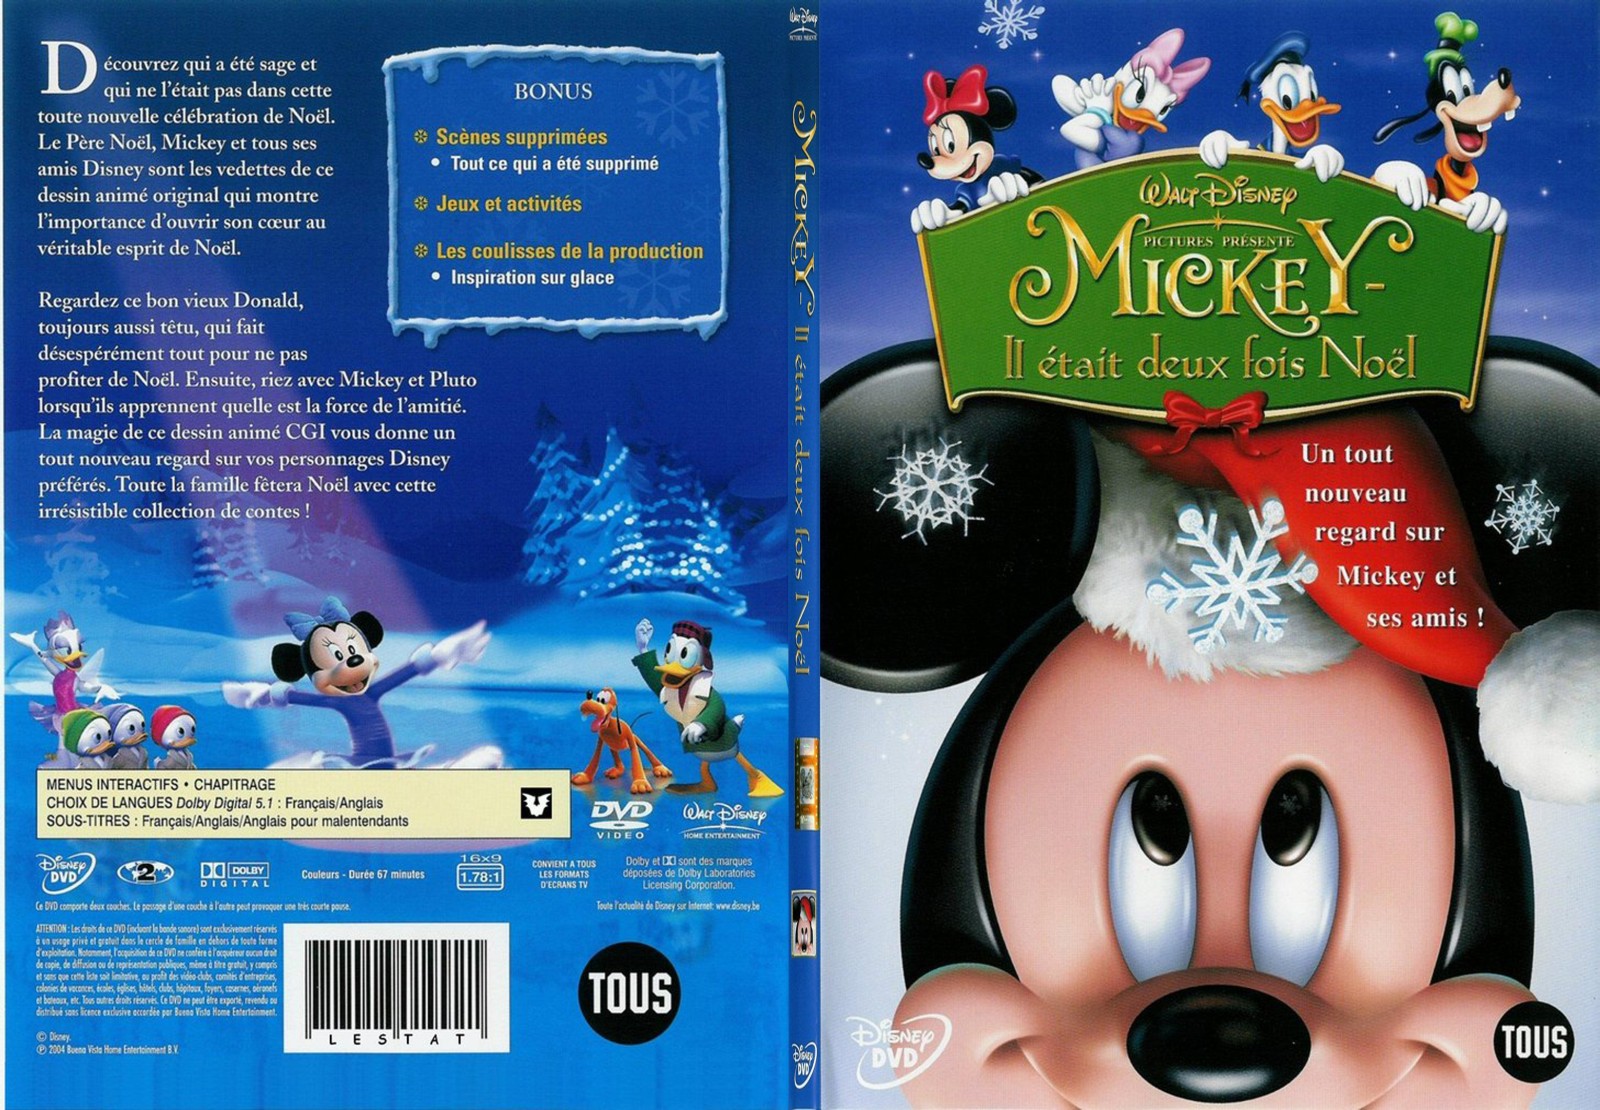 Jaquette DVD Mickey il tait deux fois Noel - SLIM